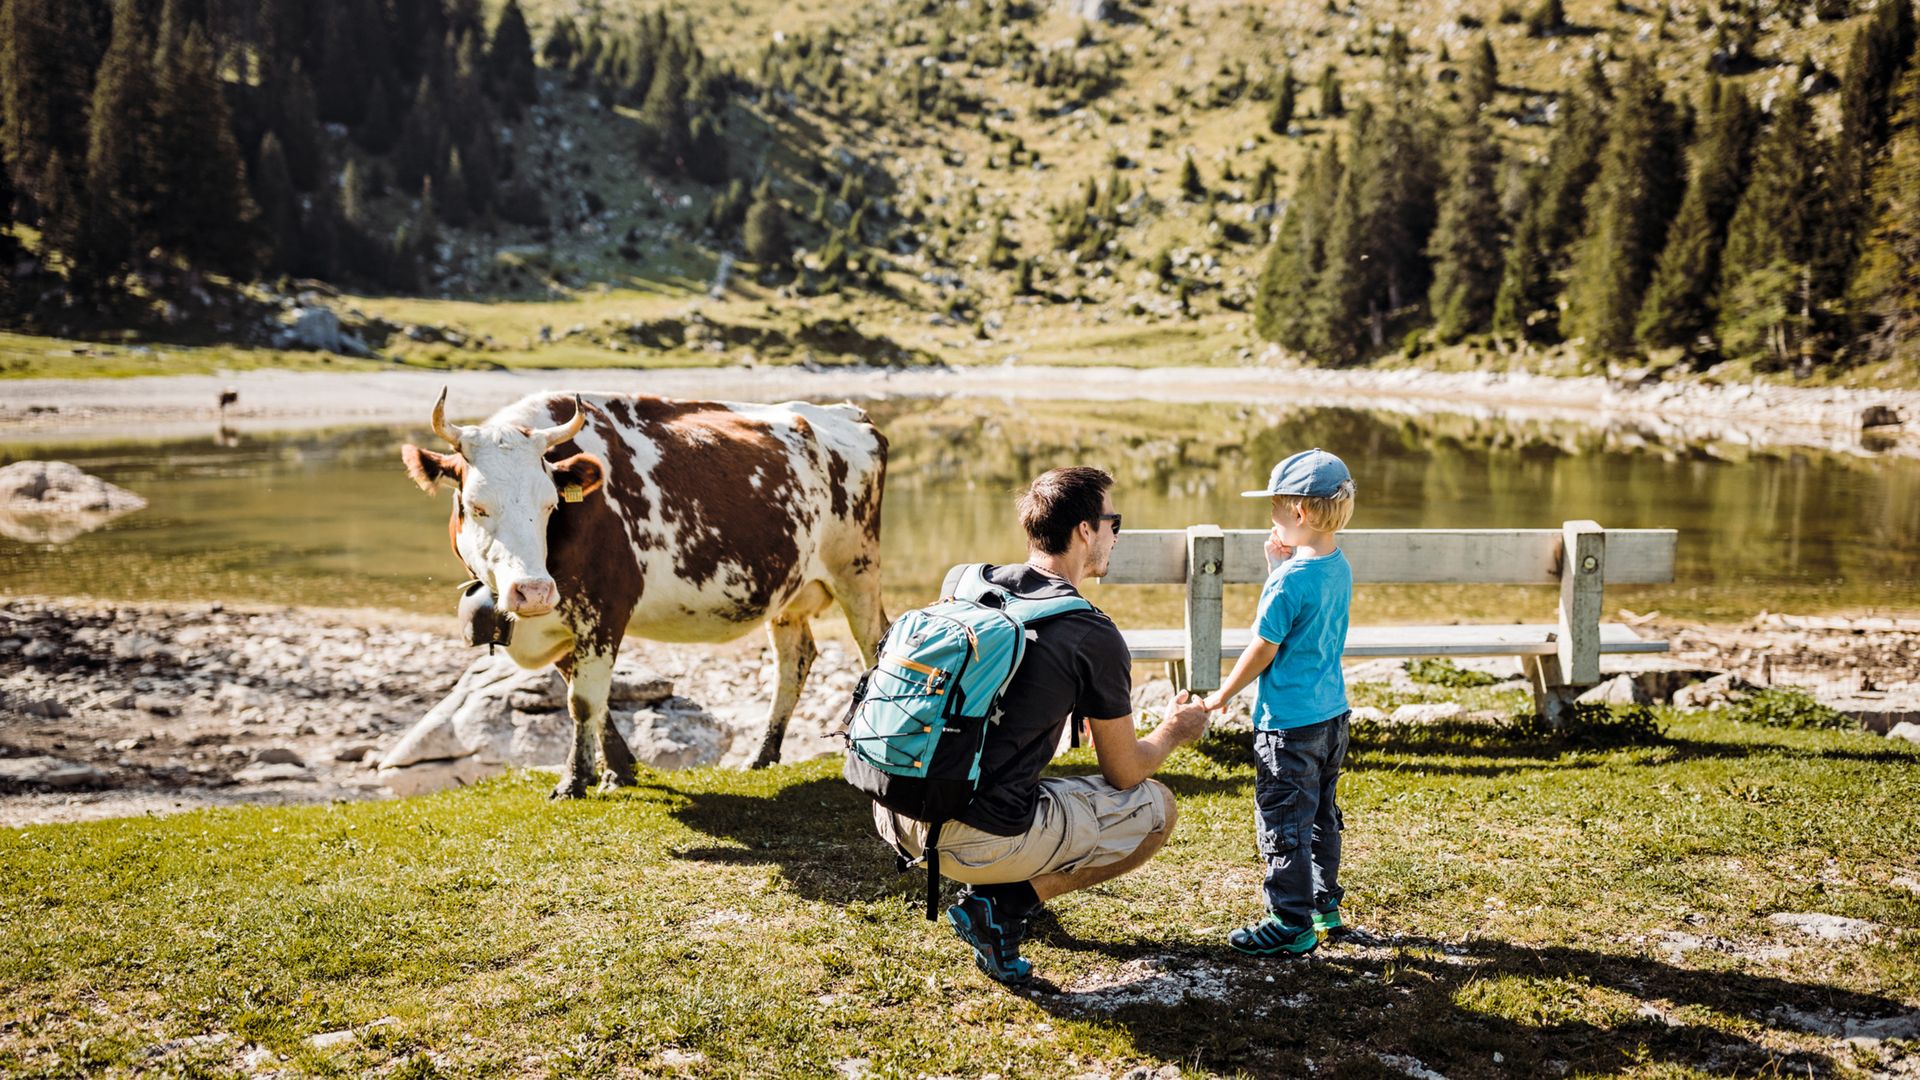 Vater und Sohn stehen vor einem kleinen Bergsee und einer Kuh. Die Kuh schaut gespannt auf die beiden Besucher. Es ist schönes, sonniges Sommerwetter.